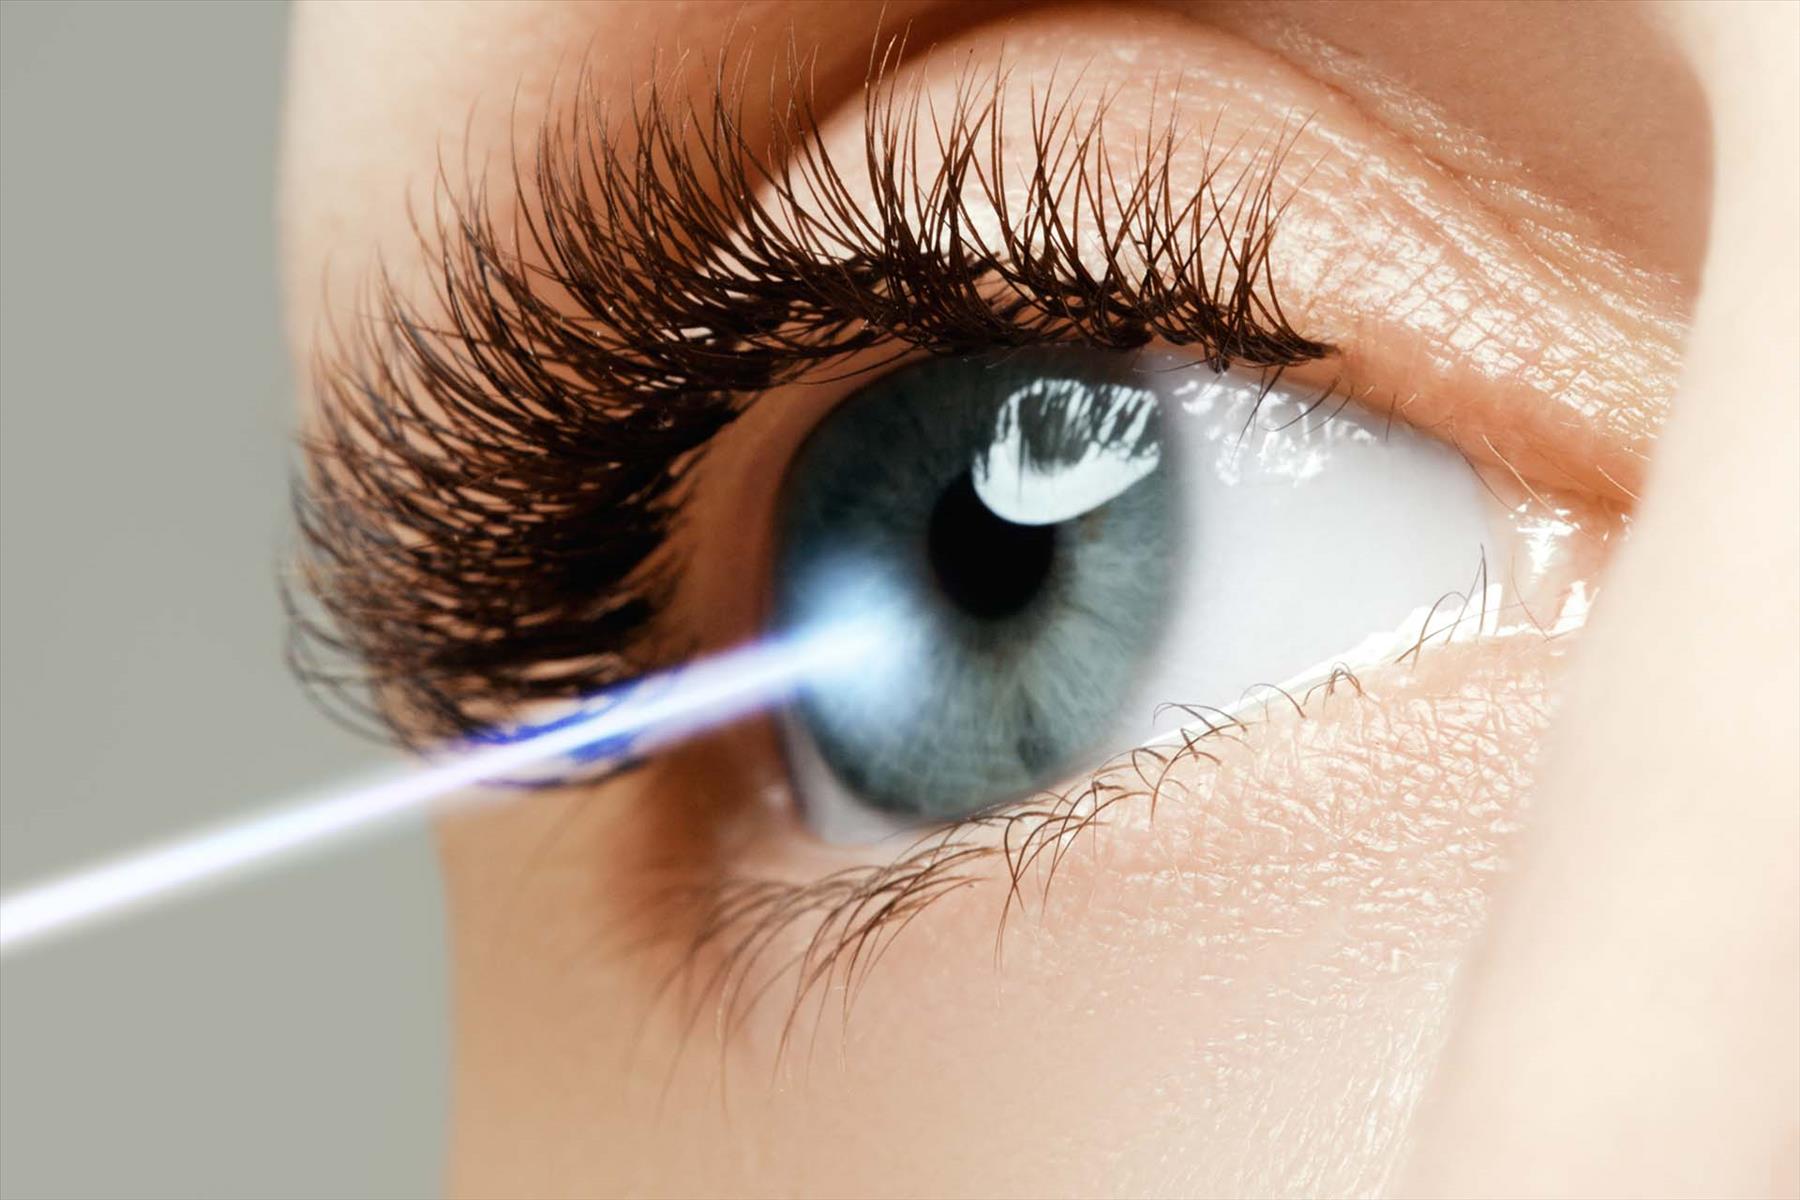 Does Laser Vision Correction Hurt?